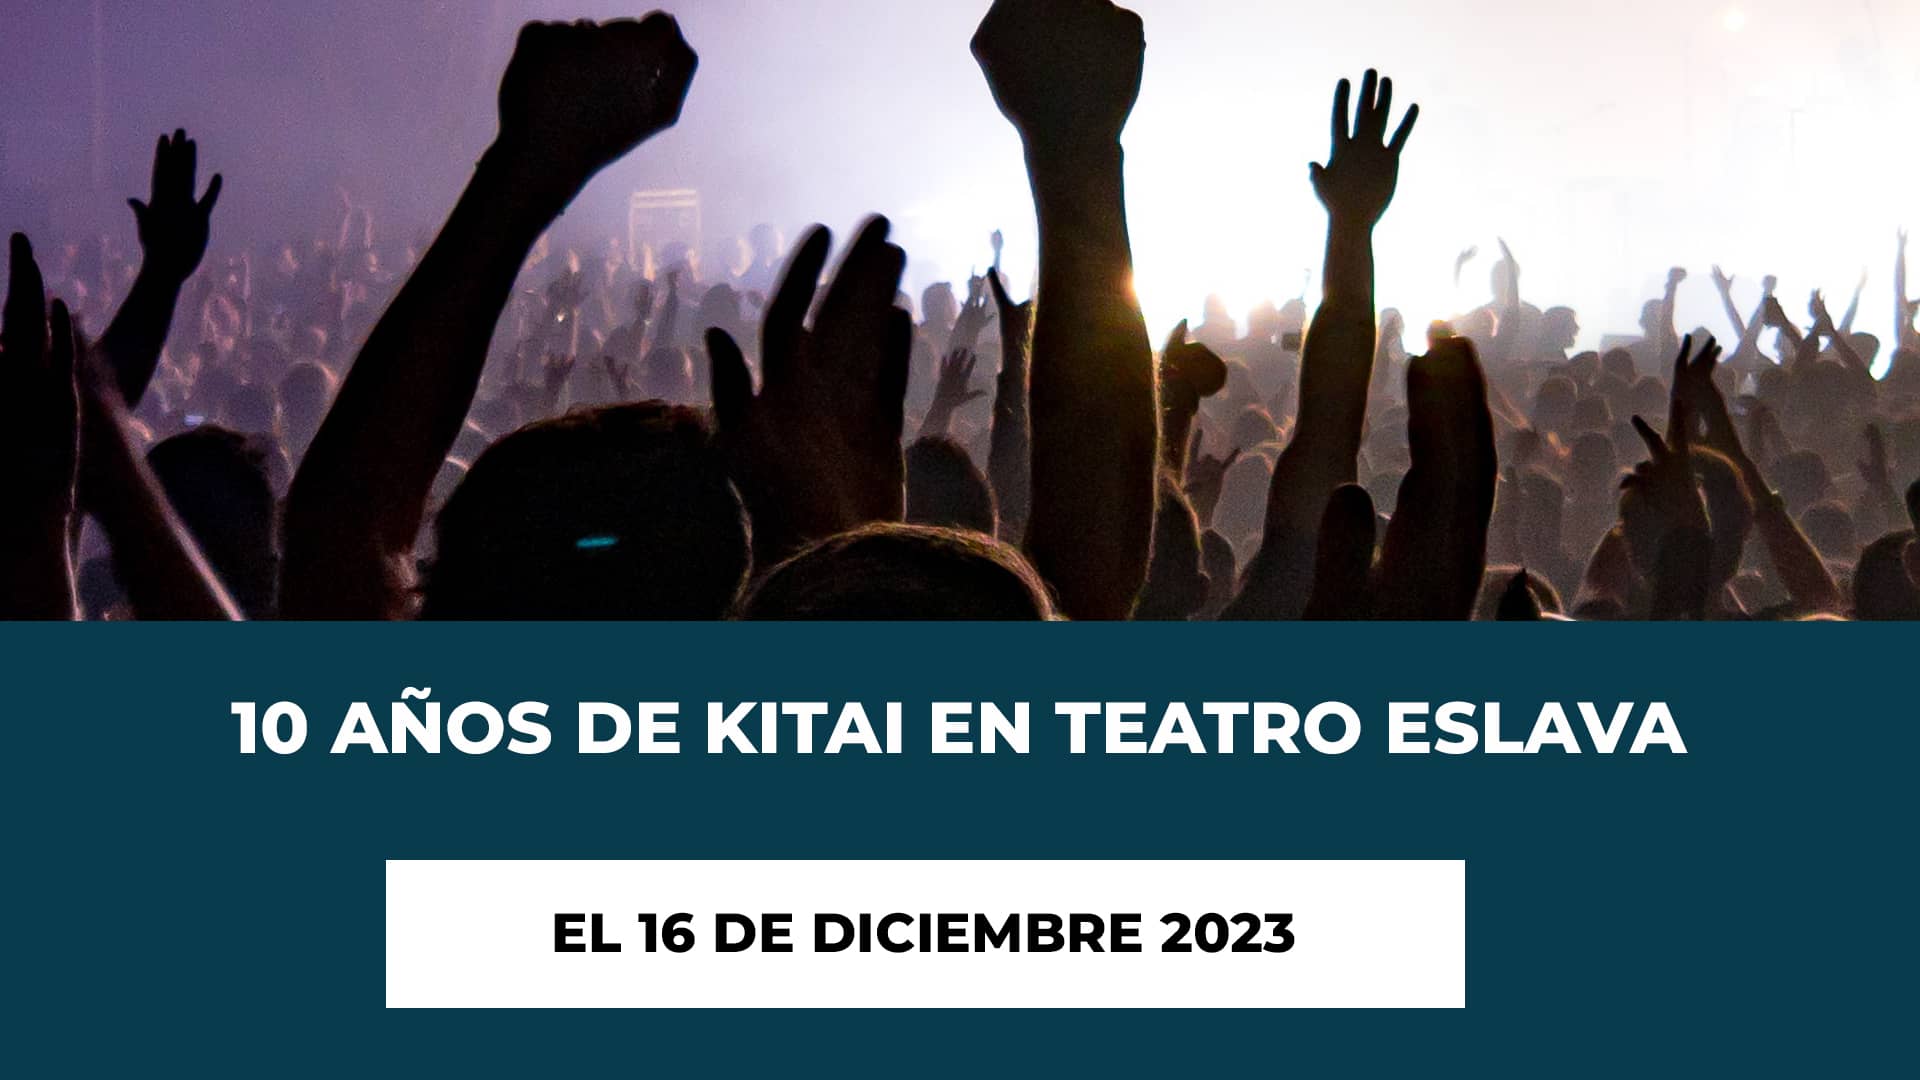 10 Años de Kitai en Teatro Eslava el 16 de Diciembre 2023 - Fecha - Lugar - Horario - Entradas Oficiales Agotadas - Kitia en Madrid